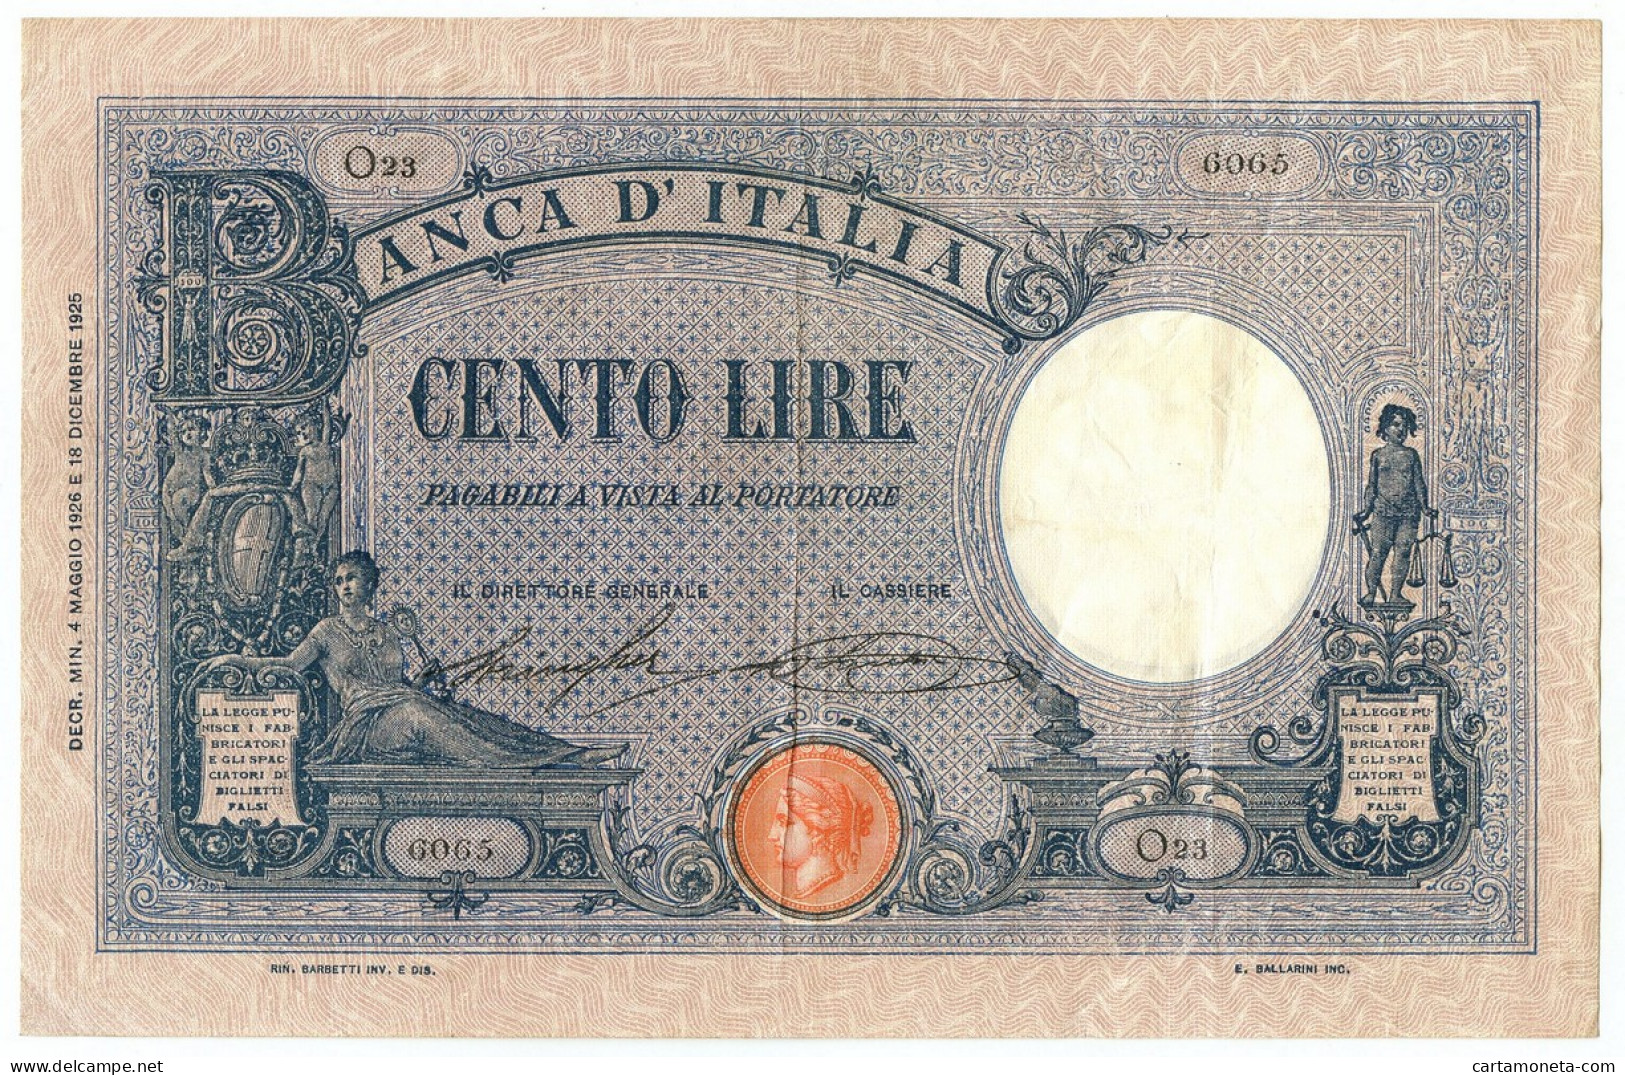 100 LIRE BARBETTI GRANDE B AZZURRO TESTINA DECRETO 04/05/1926 BB/BB+ - Otros